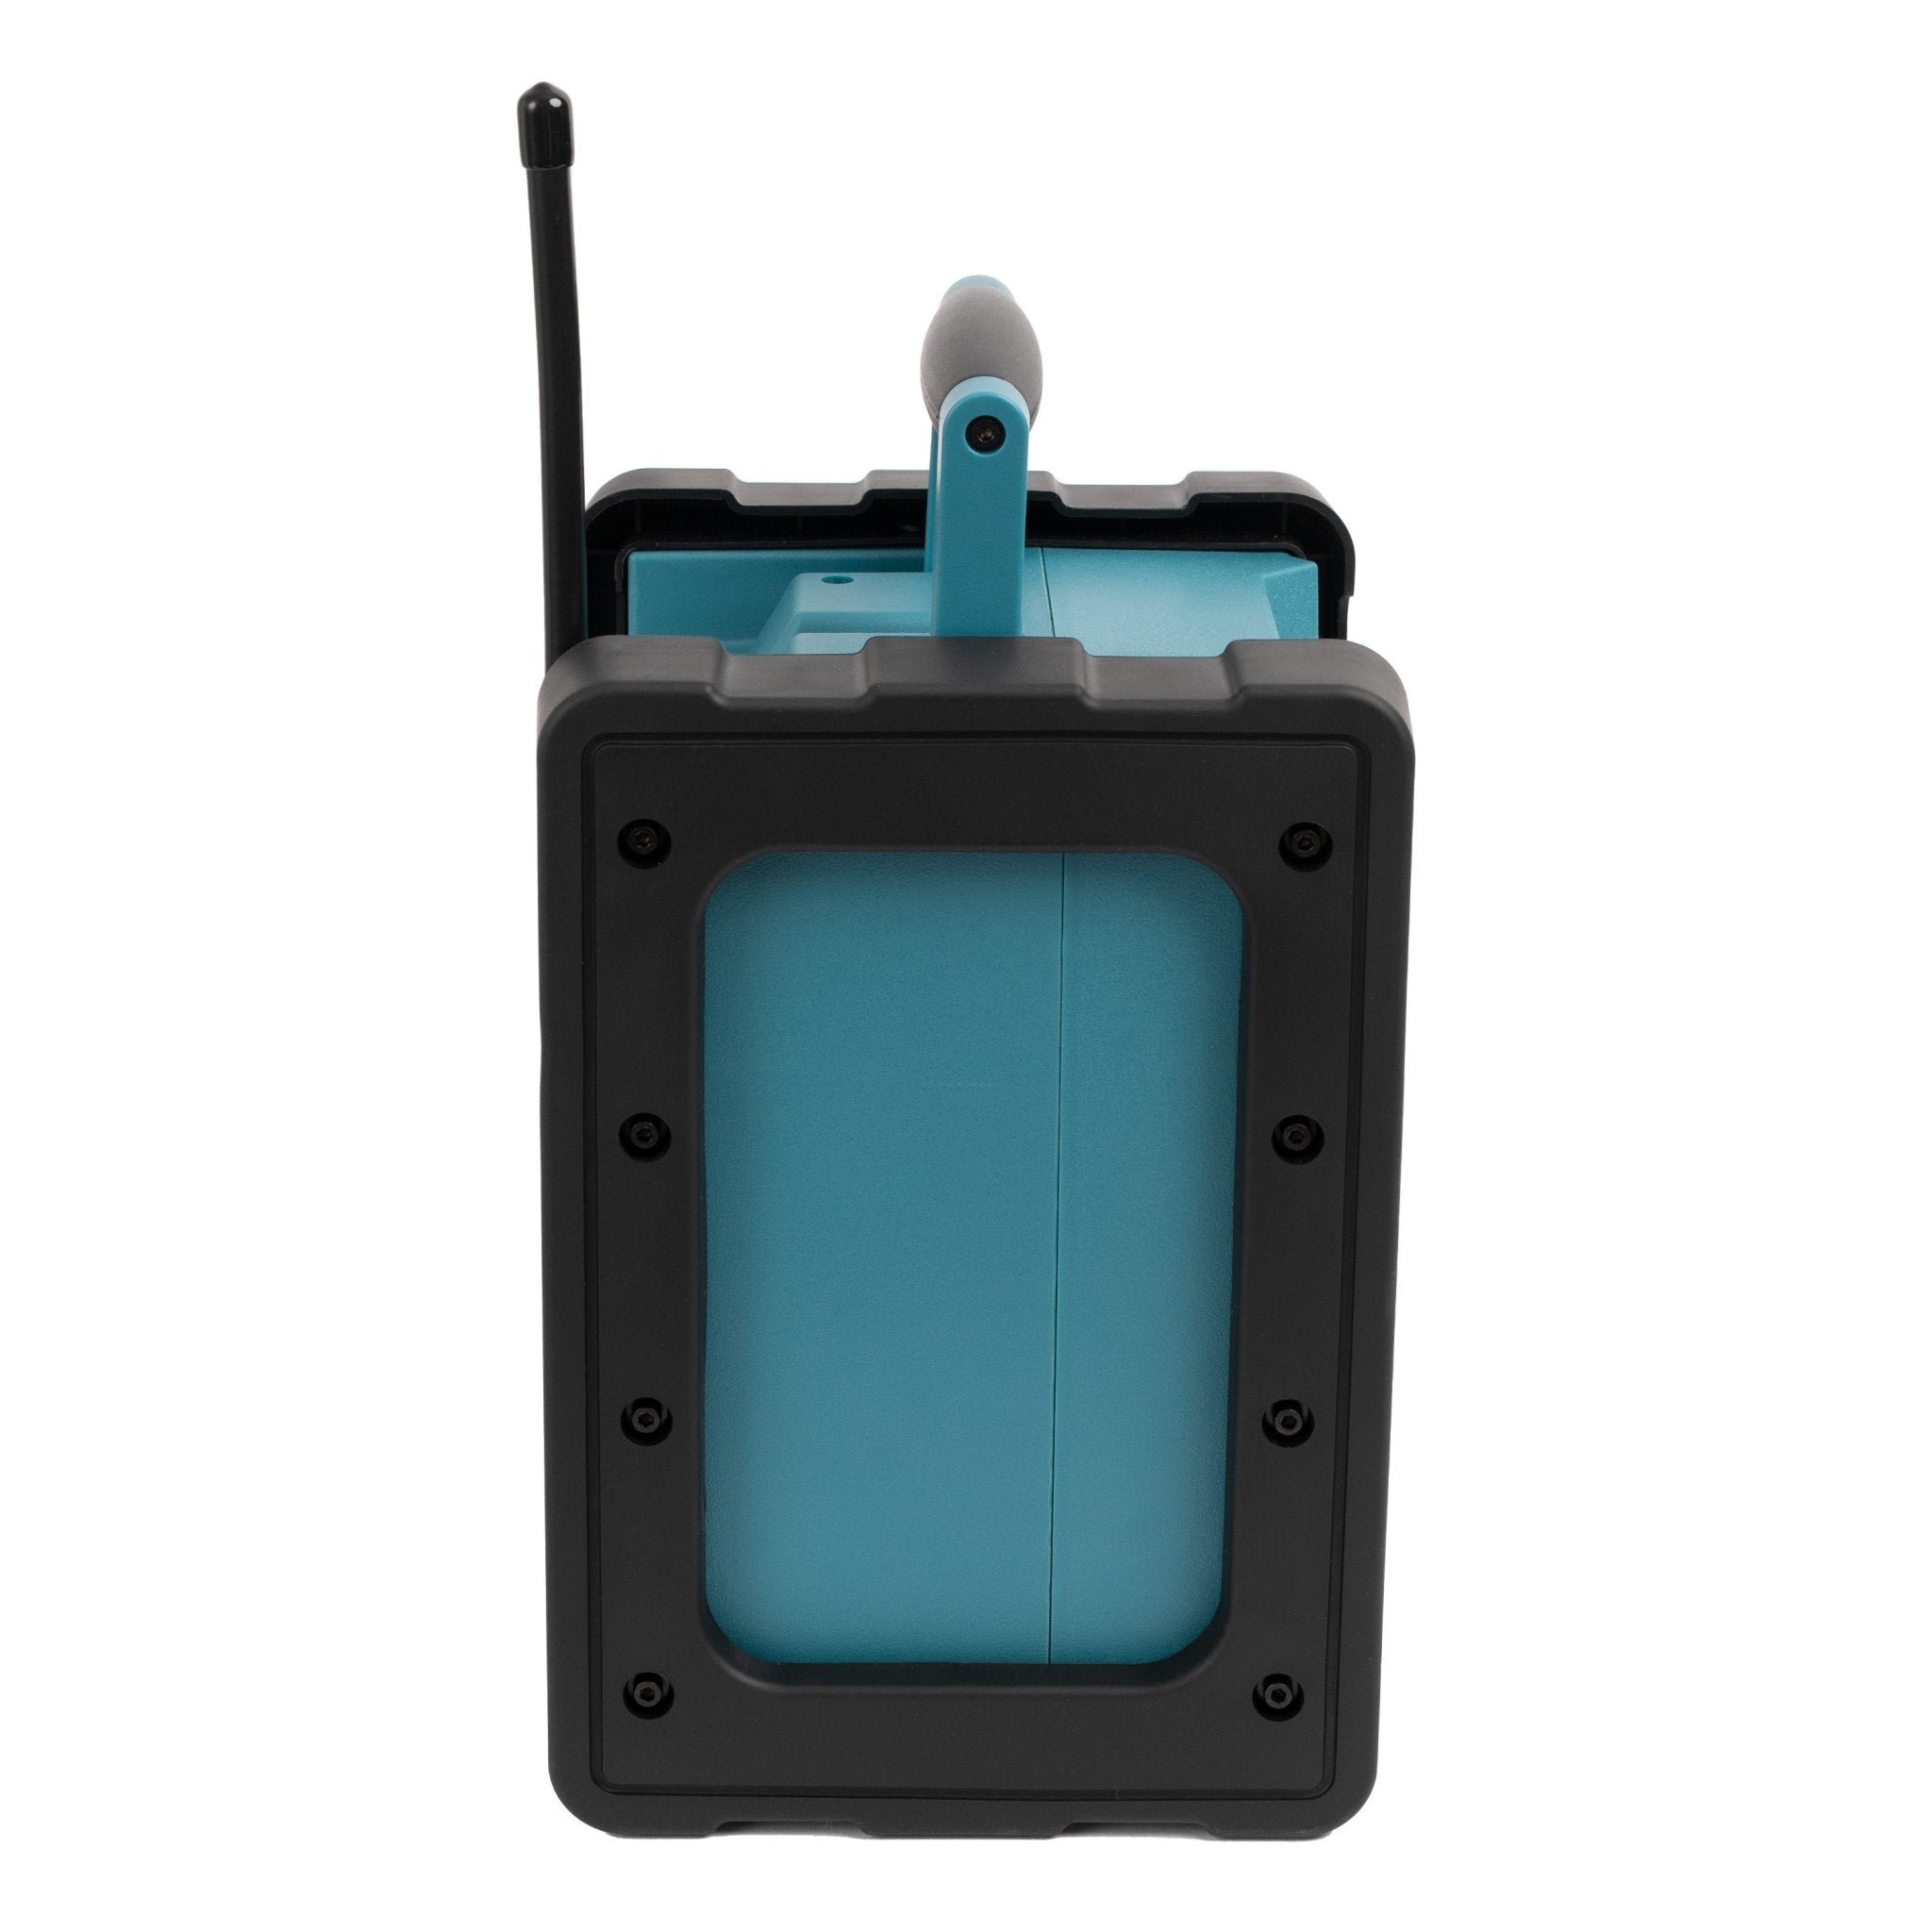 Blaupunkt Baustellenradio BSR 200 - robust und spritzwassergeschützt